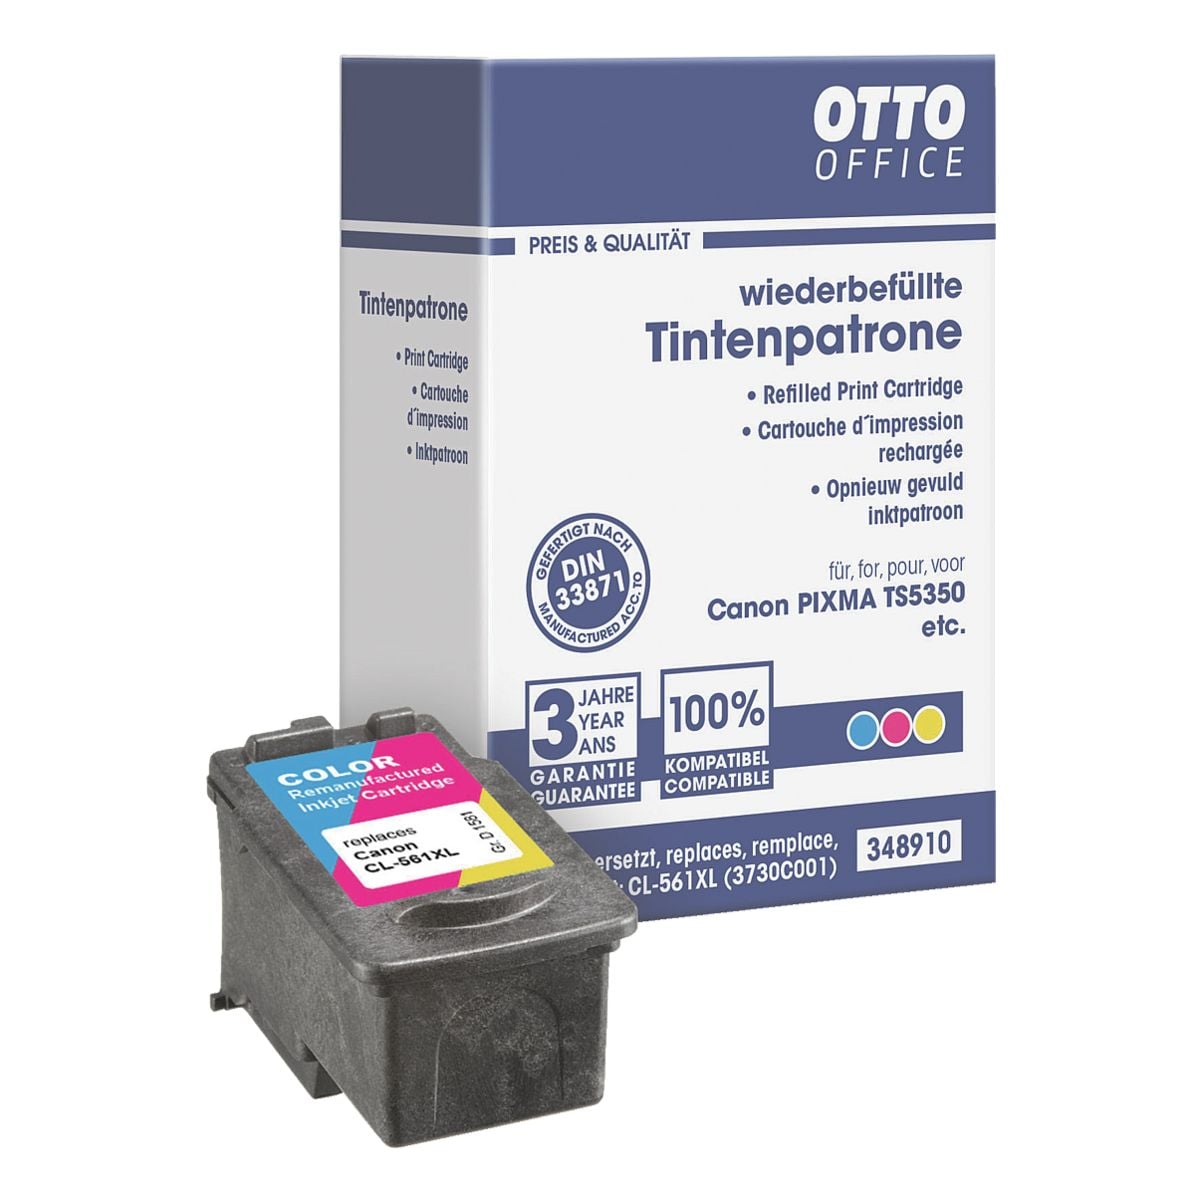 OTTO Office Tintenpatrone ersetzt Canon CL-561 XL